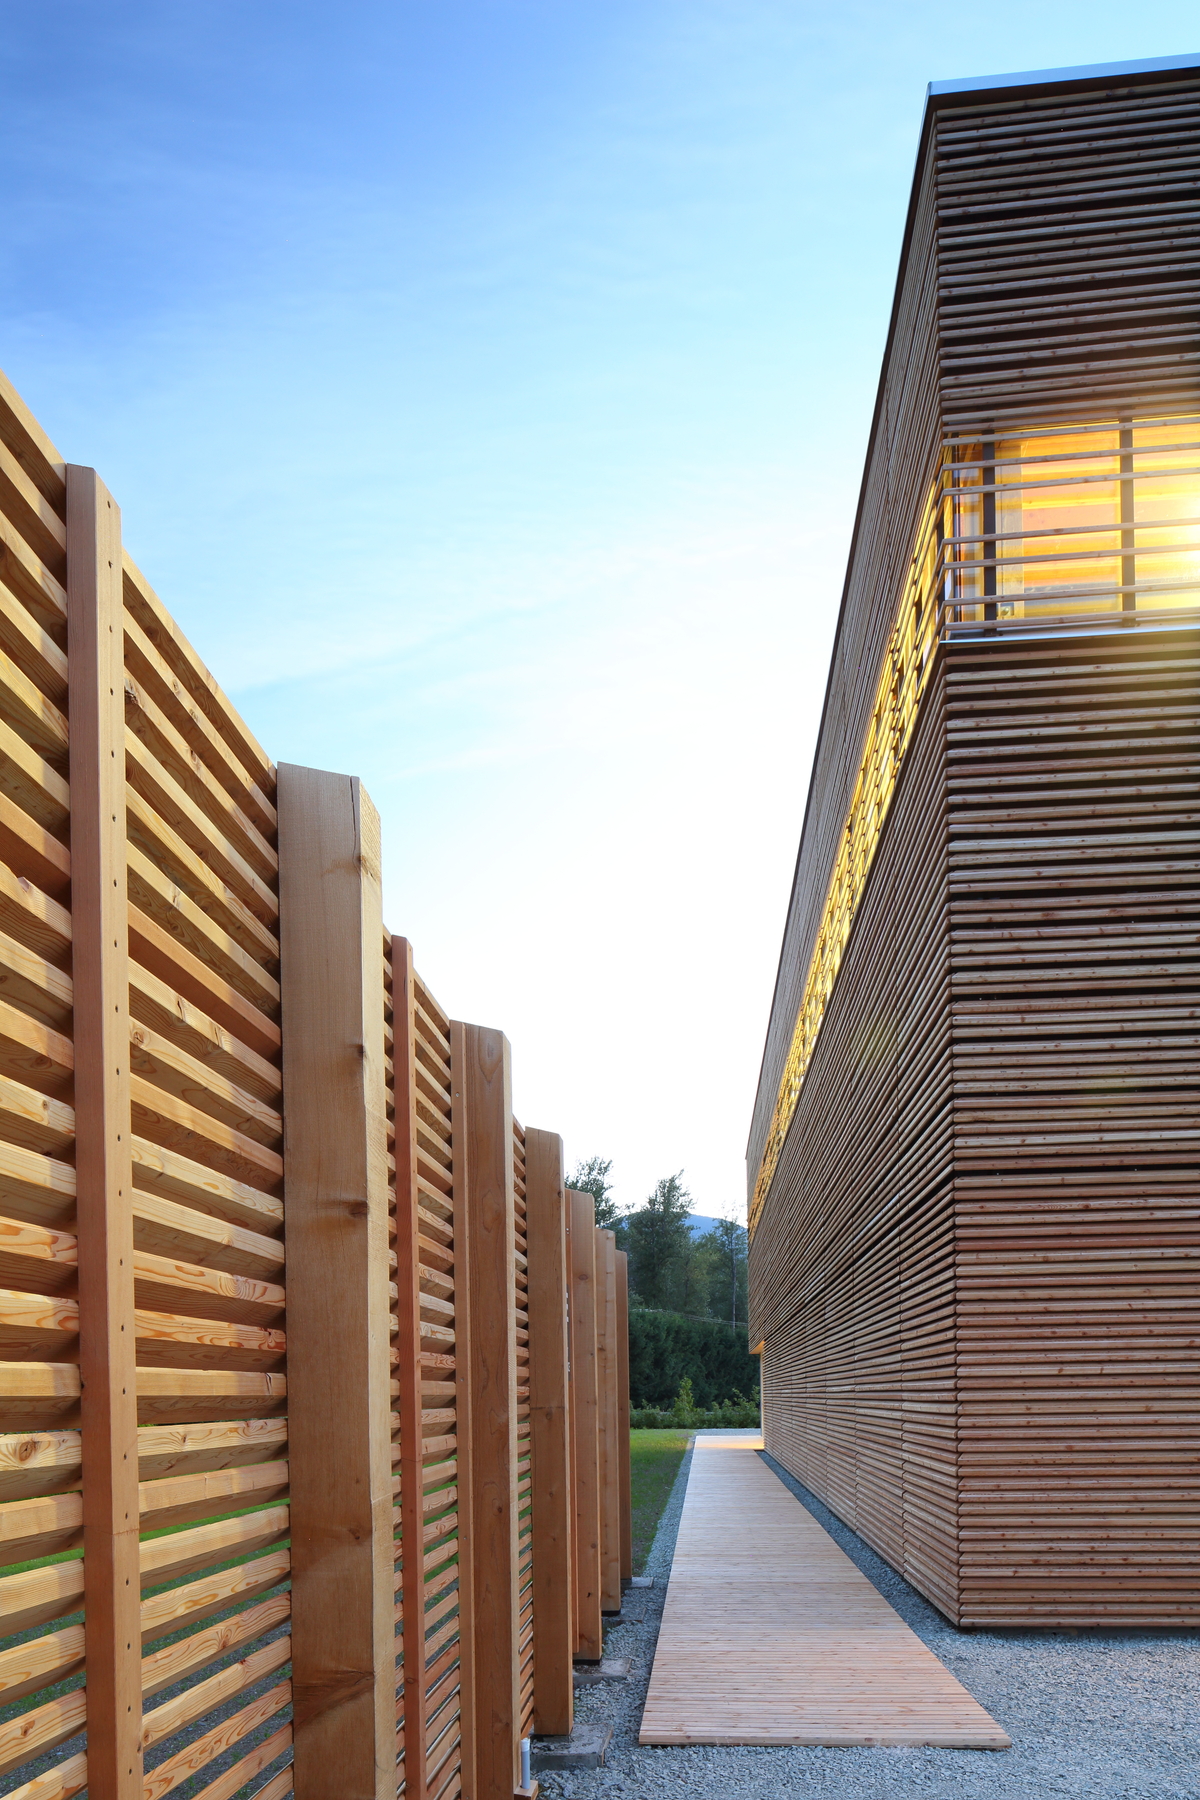 完成的BC被动式房屋工厂的外部下午视图，低层被动式房屋结构由轻框架和大量木材组件建造，显示包裹在外部木板条，木走道和装饰性木栅栏